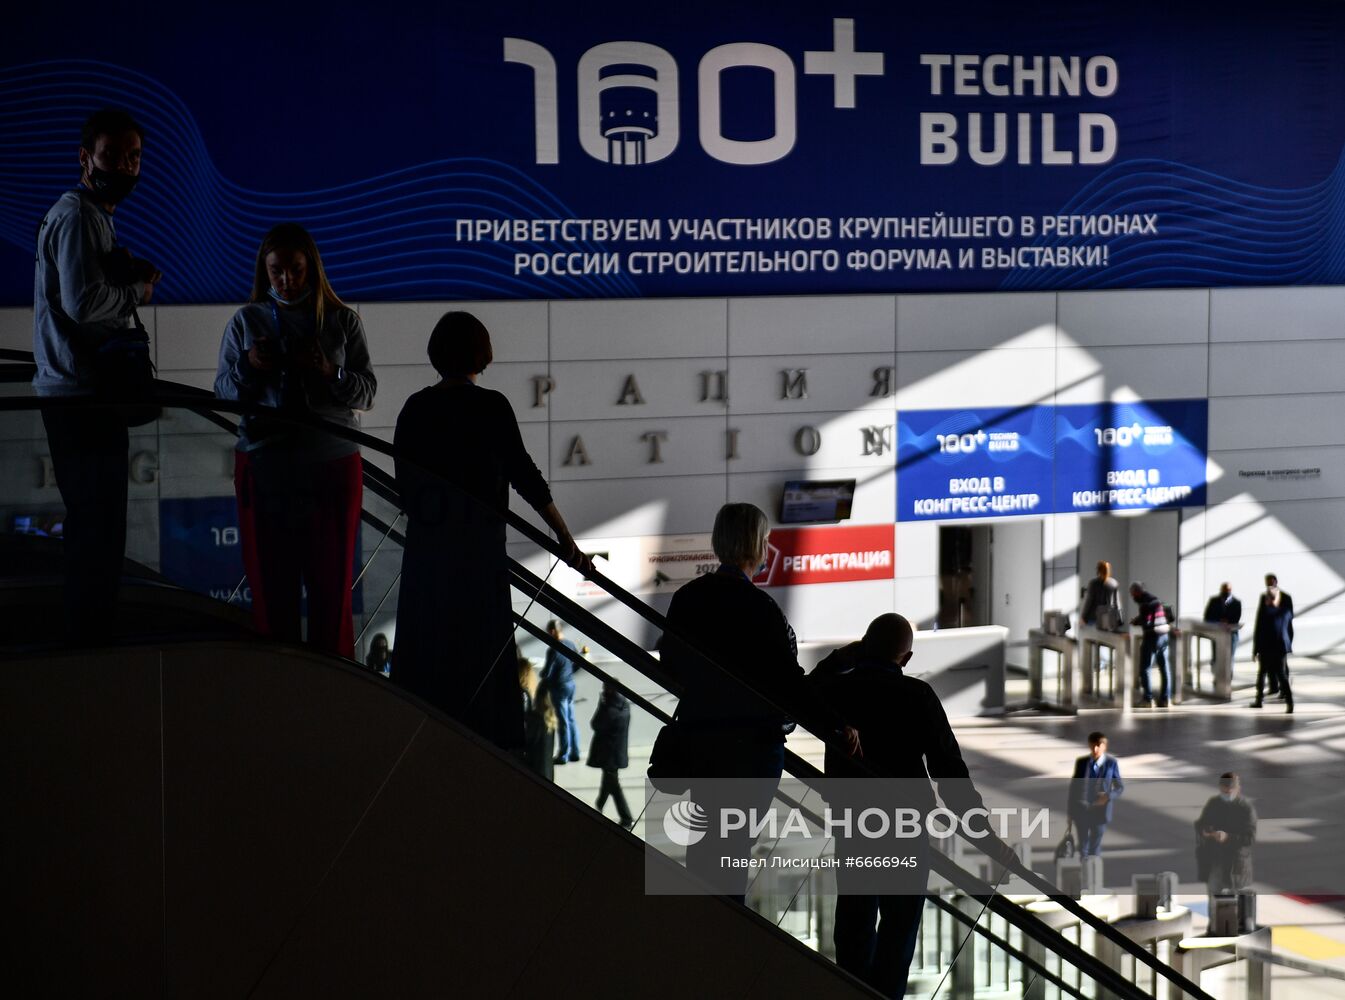 Международный строительный форум 100+ TechnoBuild в Екатеринбурге. День второй